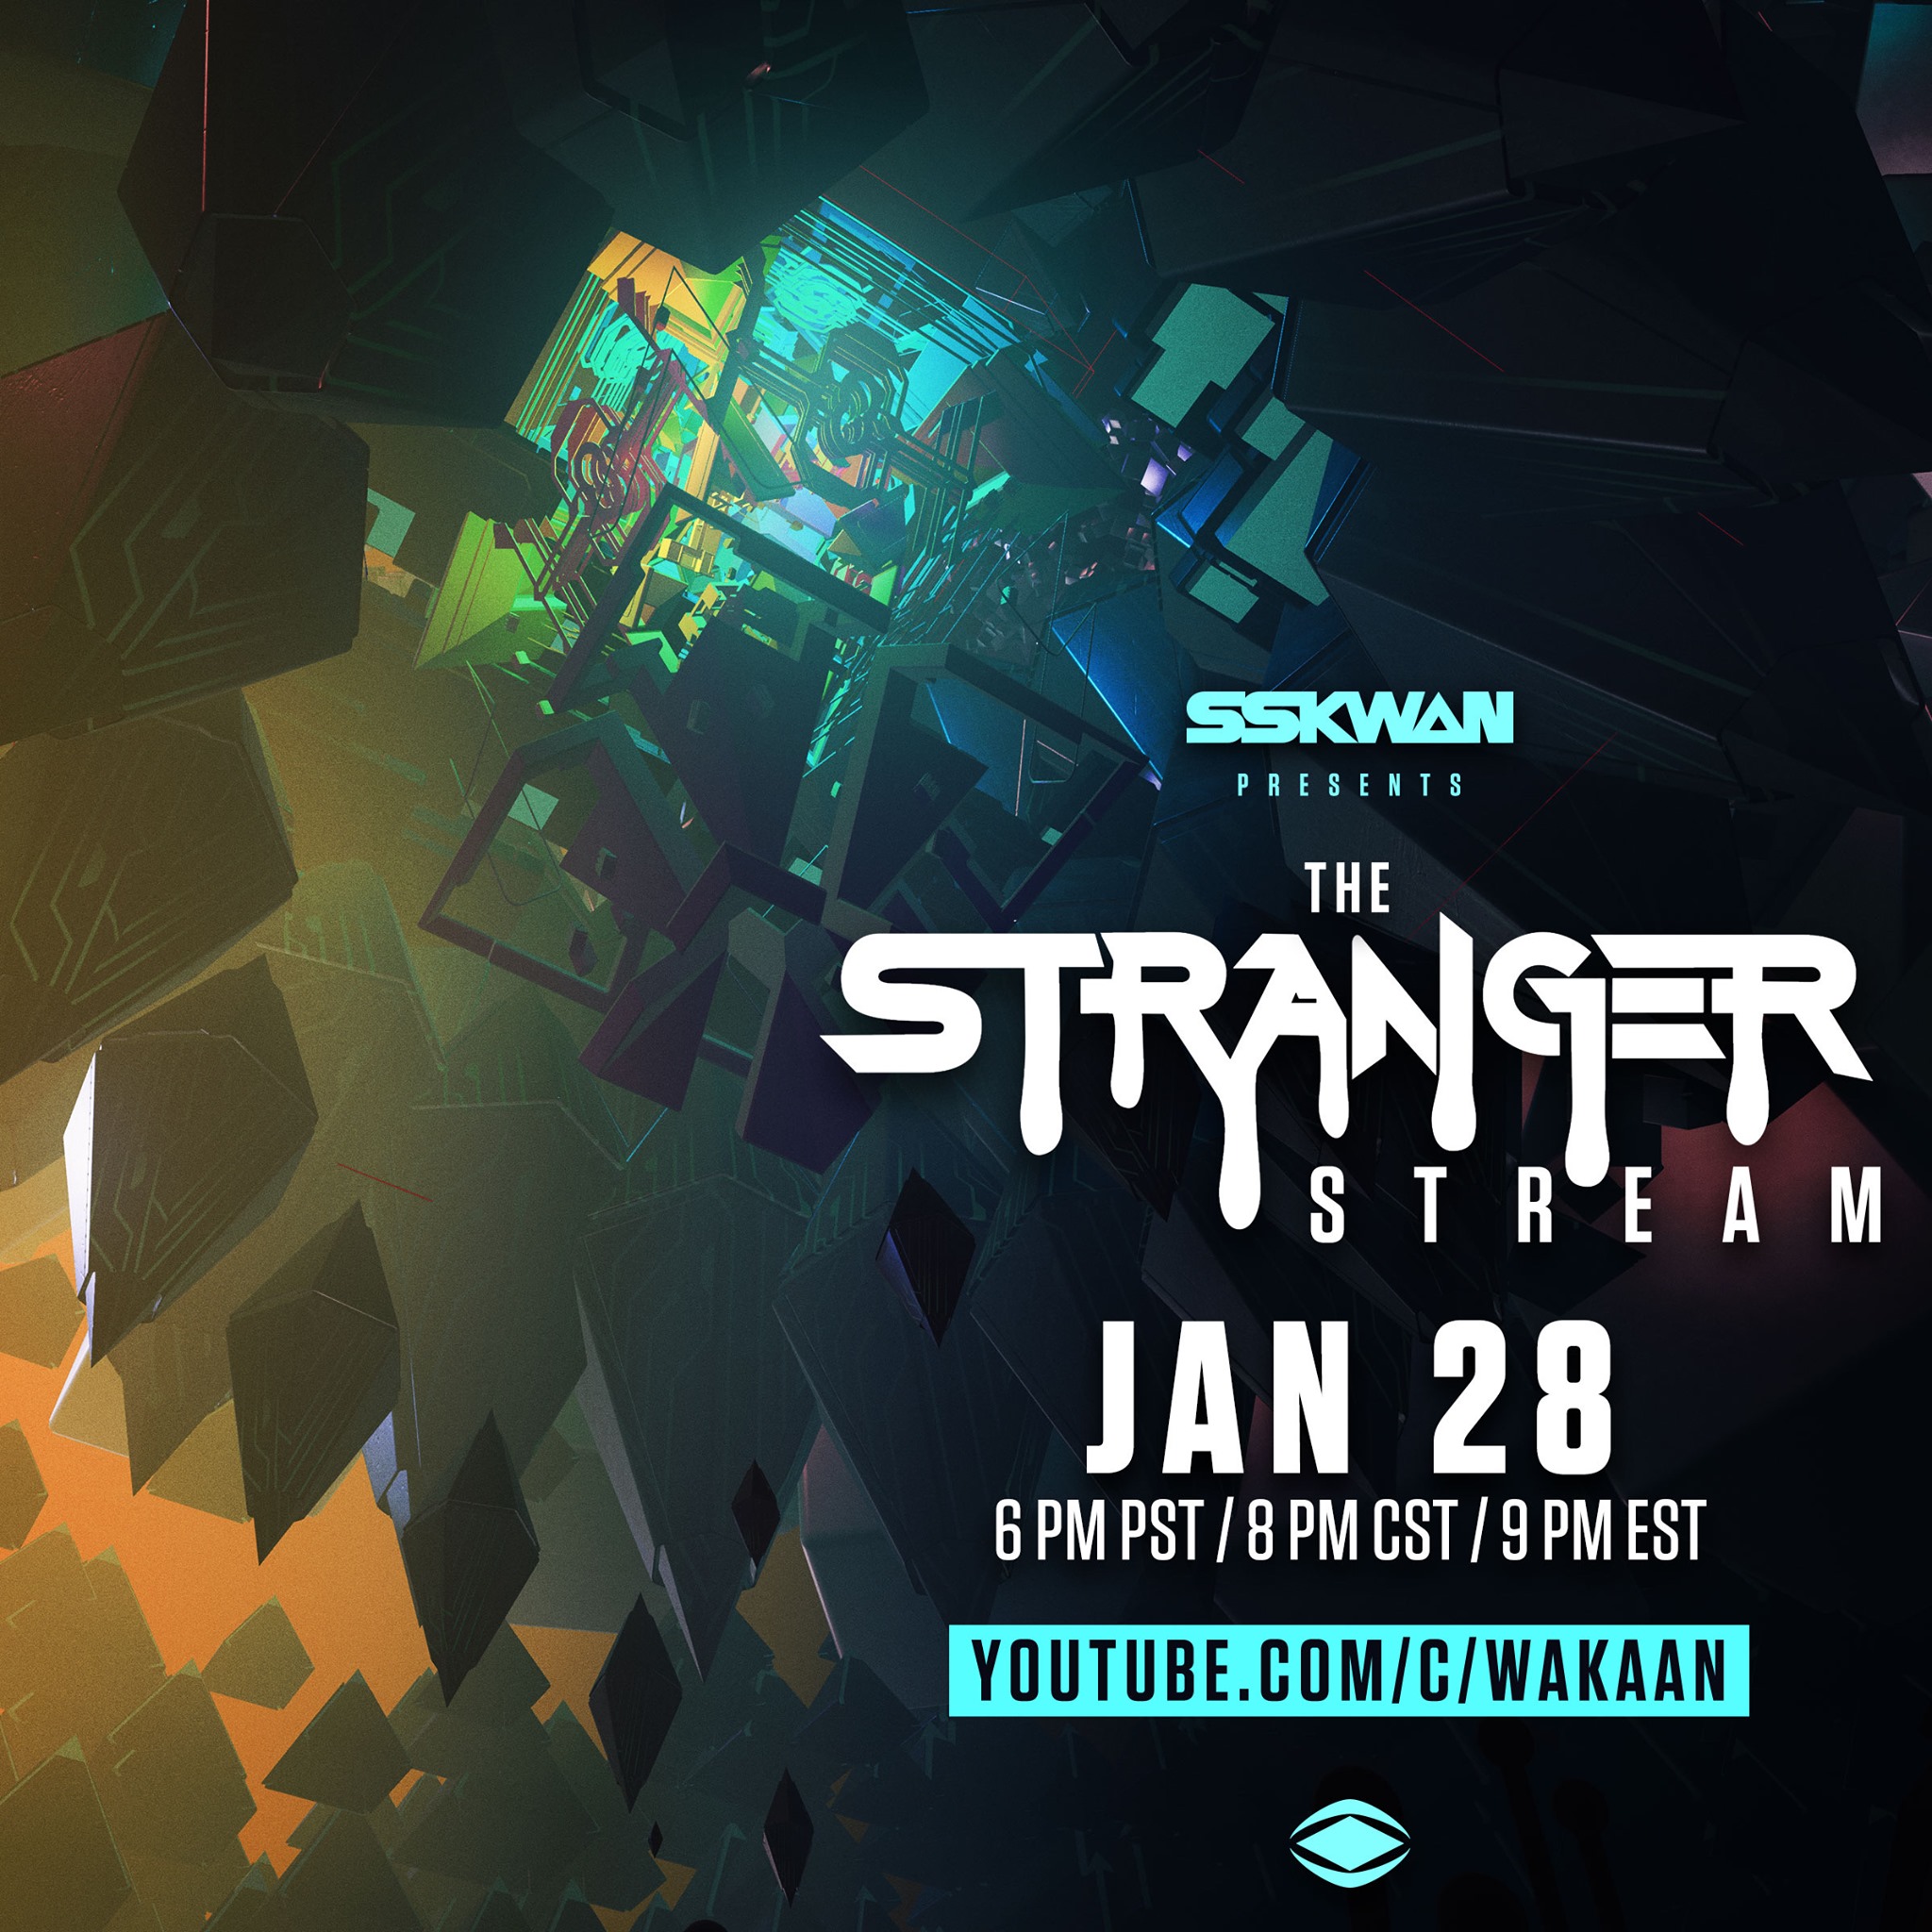 Liquid Stranger and Sskwan Present a Trippy ‘Stranger Stream’